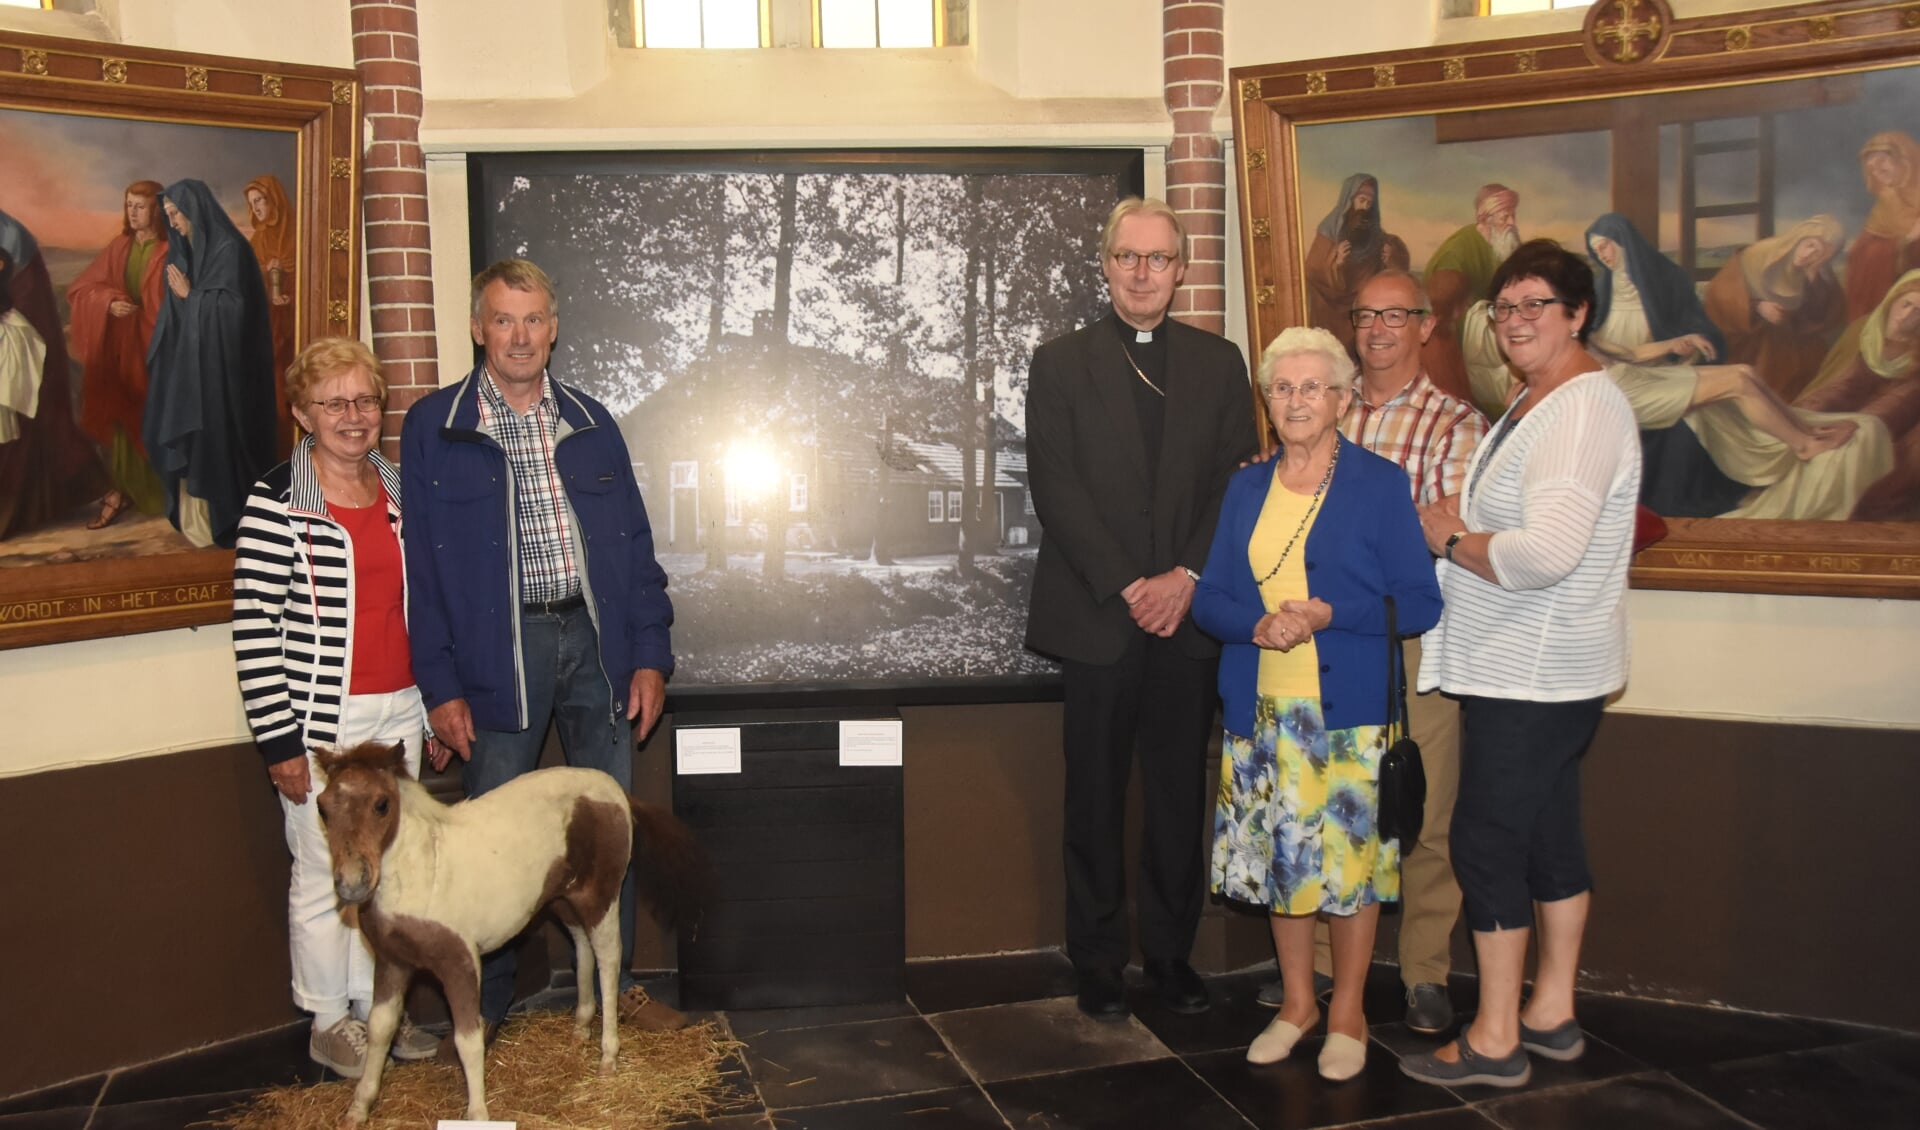 V.l.n.r. Wim Bekkers en zijn vrouw, Mgr. De Korte, Diny Bekkers en nog een keer Wim Bekkers met zijn vrouw voor een foto van het geboortehuis van Mgr. Bekkers